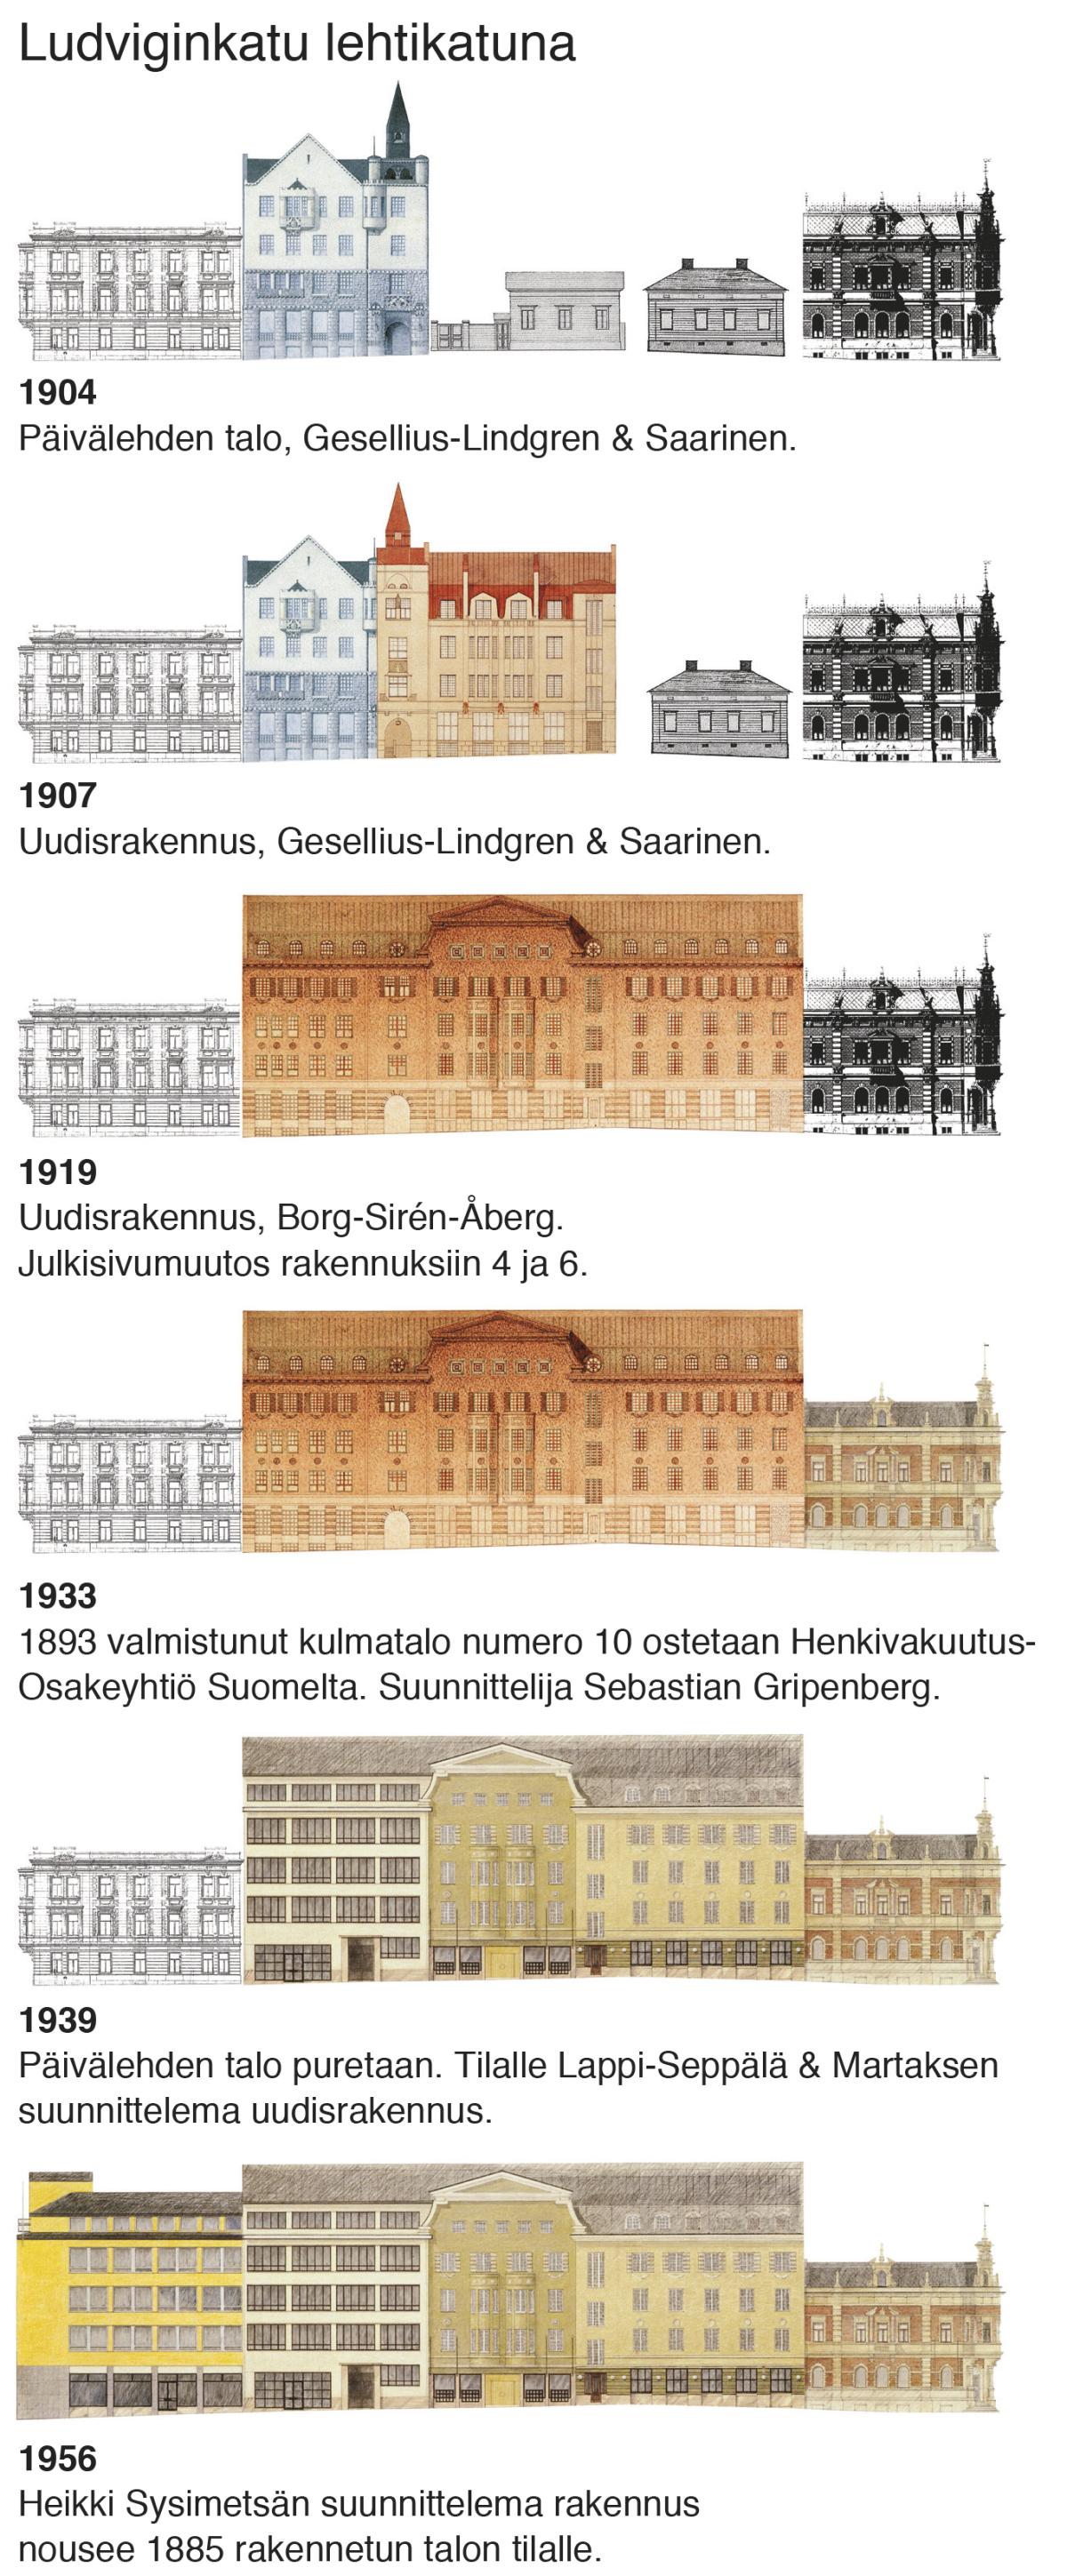 Ludviginkadun eteläpuolen rakennusten muutokset 1904–1956 kuvasarjana